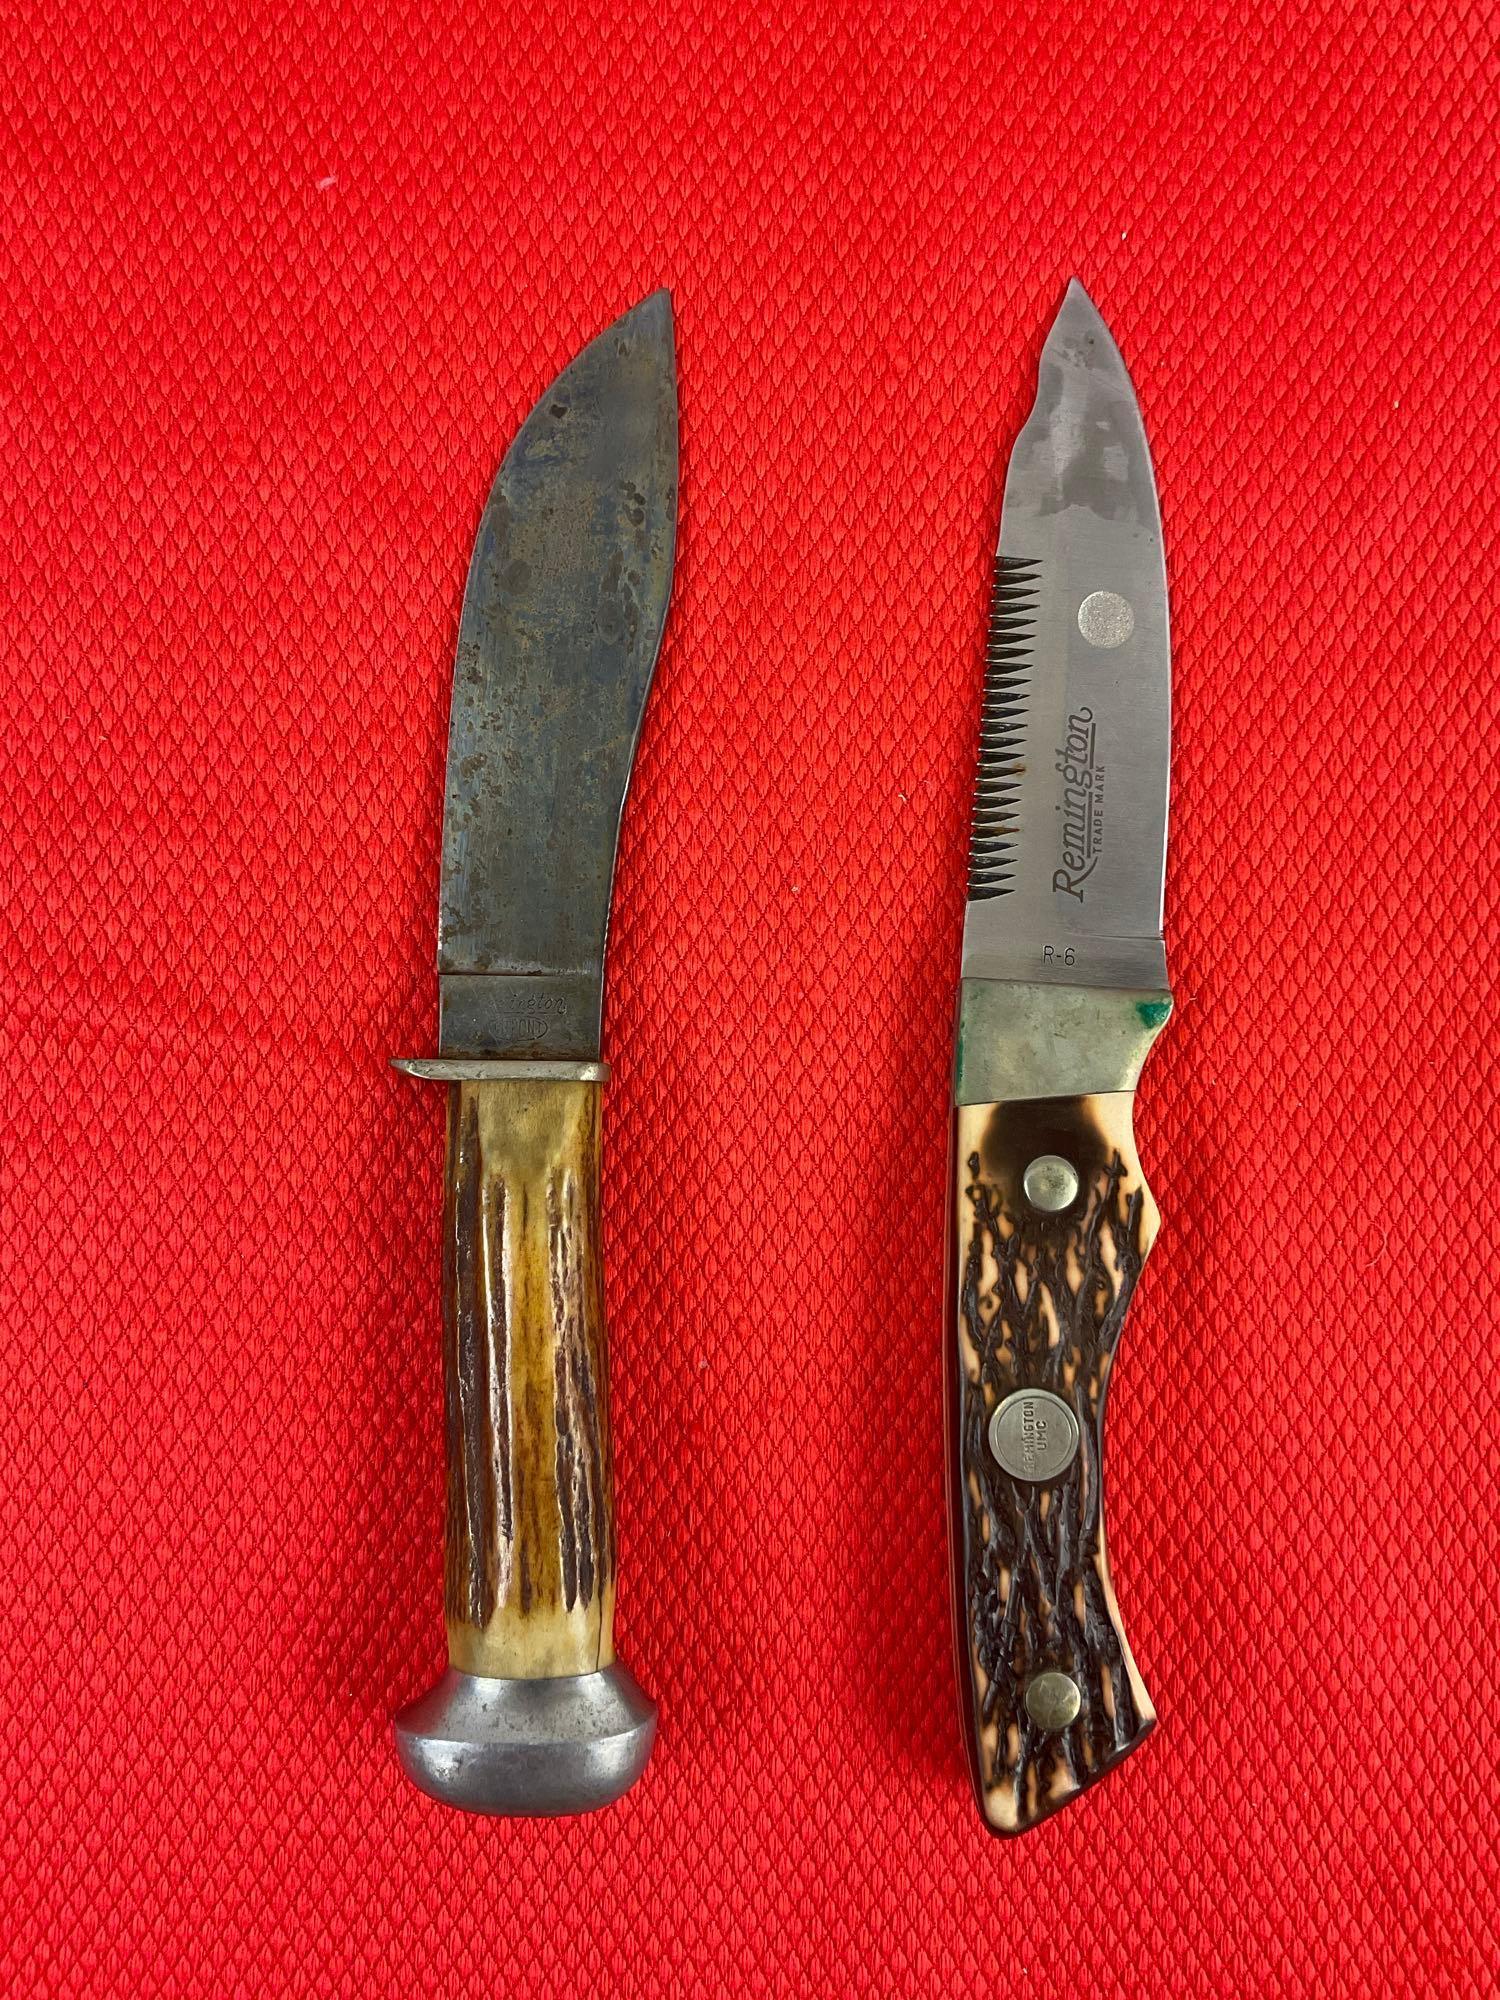 2 pcs Vintage Remington 4.5" Fixed Blade Collectible Hunting Knives Models R-6 & Rare RH320. See